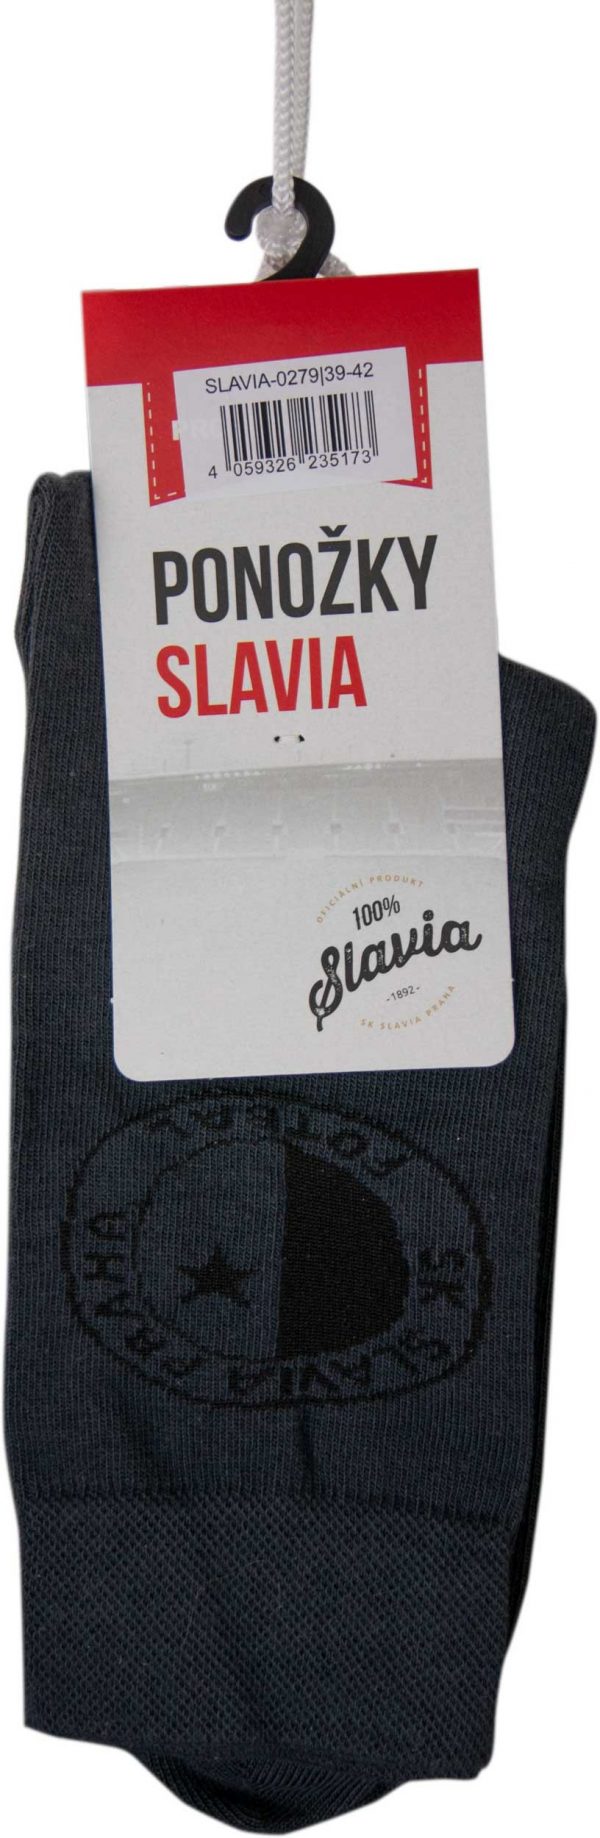 Ponožky Slavia Elegant, K Sporting